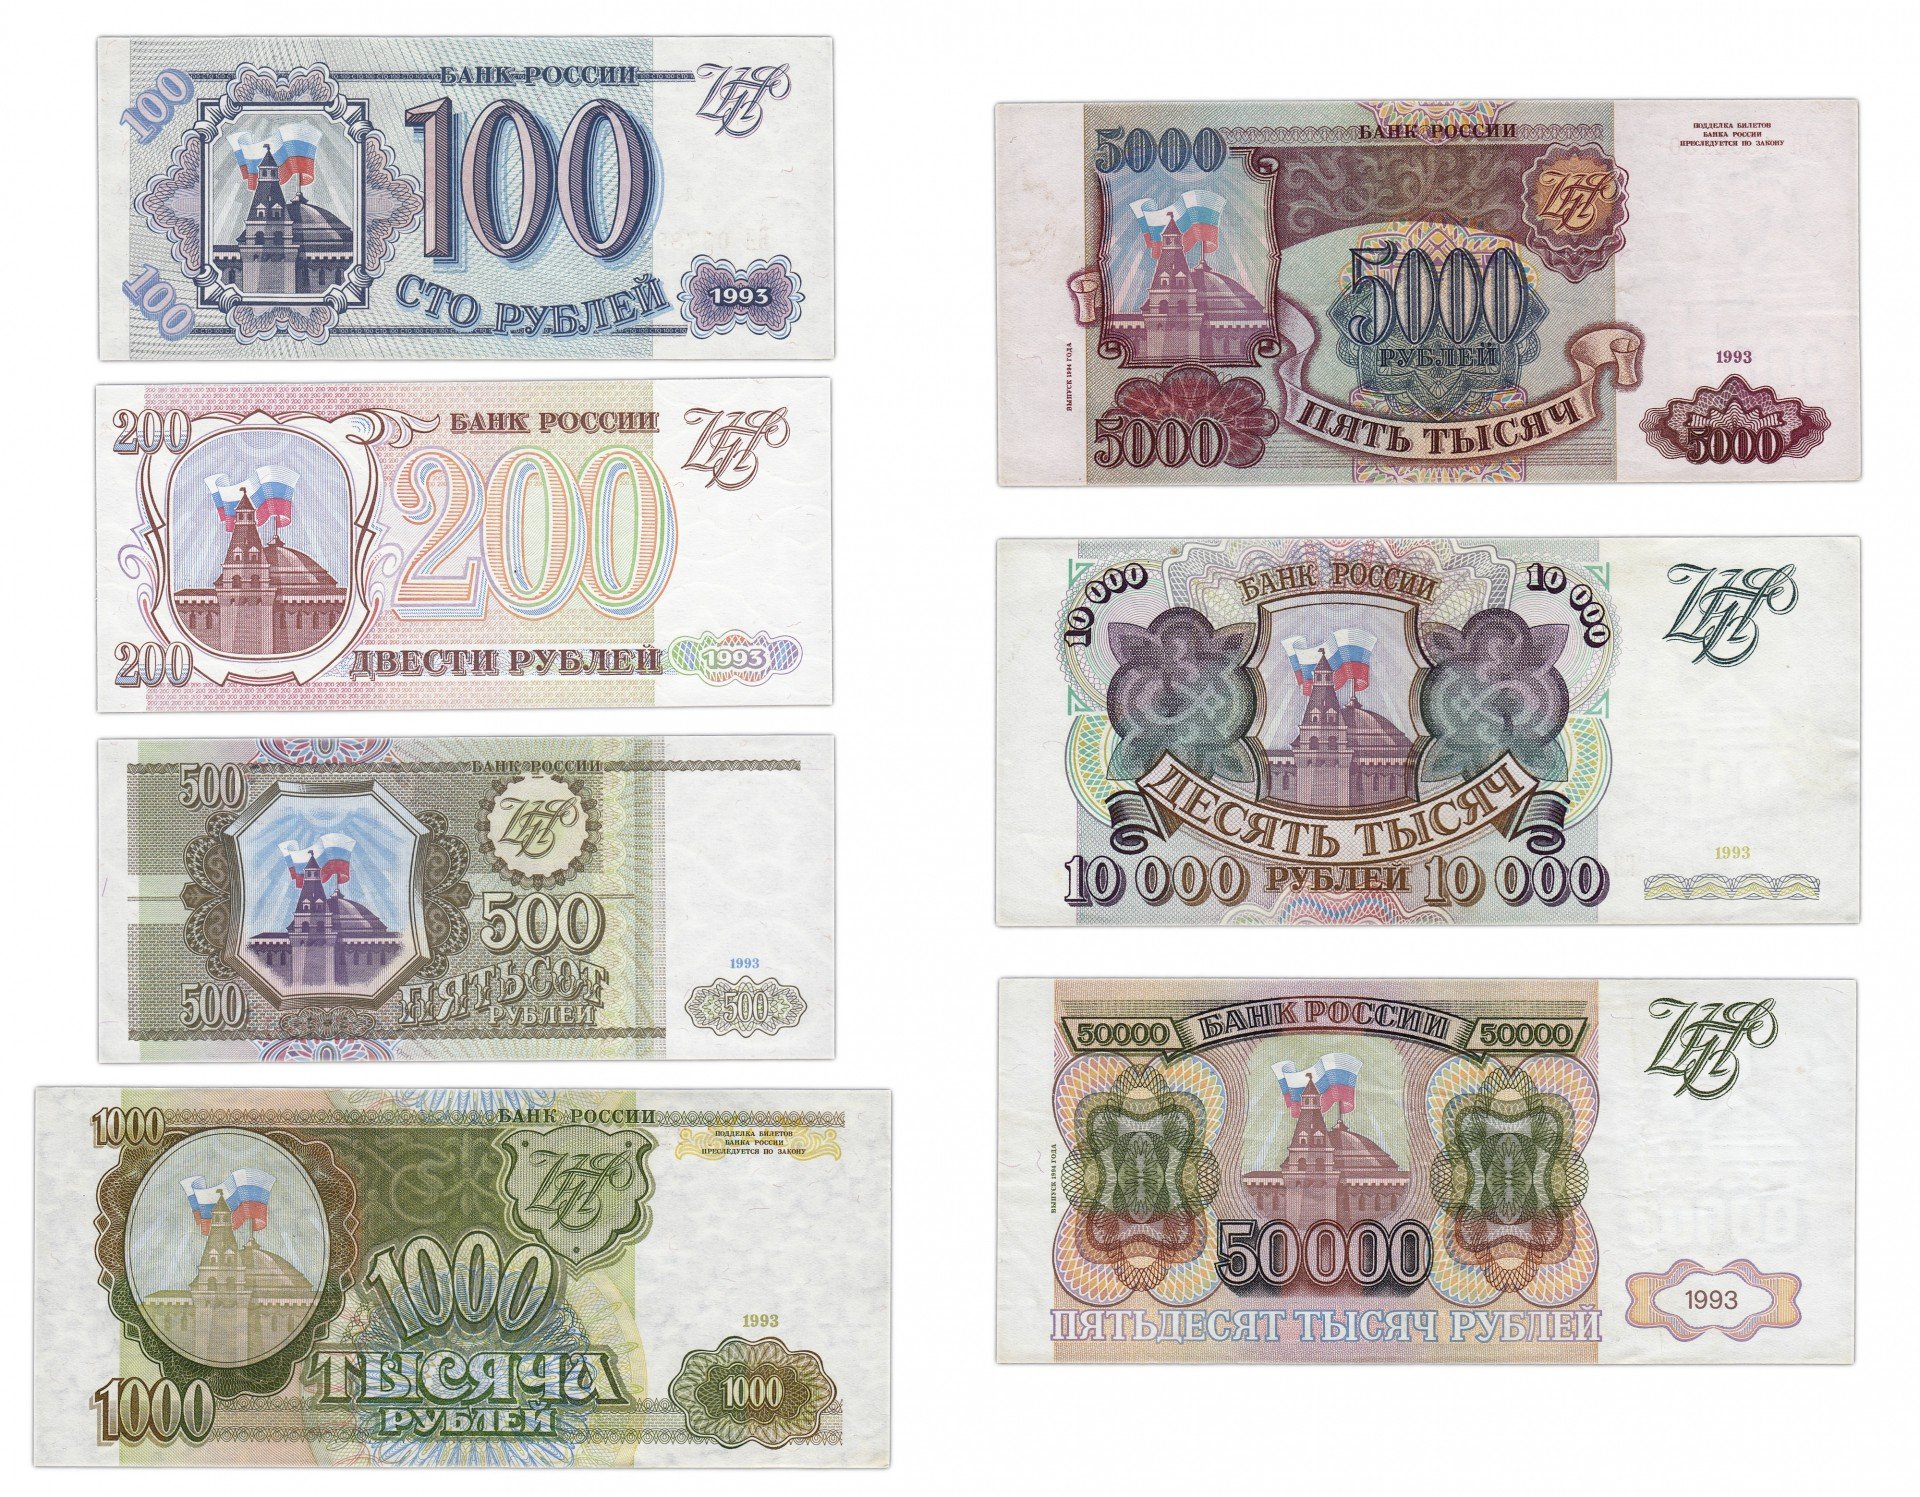 50000 рублей россии в долларах. Купюры 100, 200, 500 рублей 1993 года. Бумажные купюры 1993 года. Банкноты образца 1993 года. Деньги в 1993 году в России.